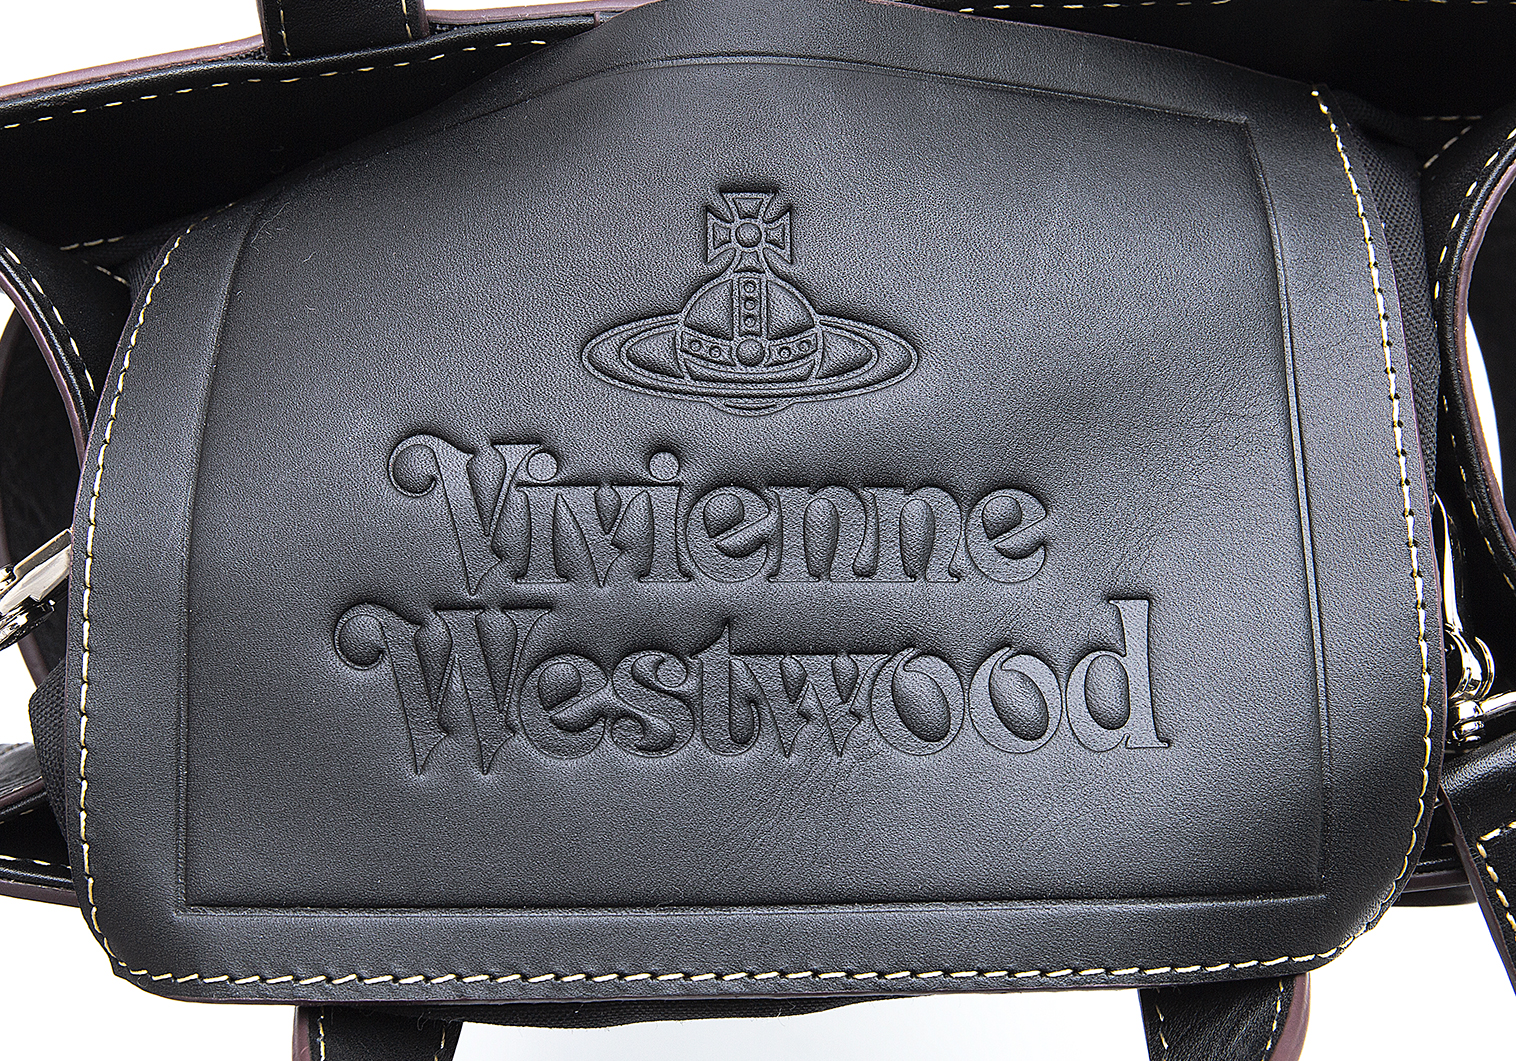 Vivienne westwood ヴィヴィアンウエストウッド フレーム バッグカラー…ブラウン